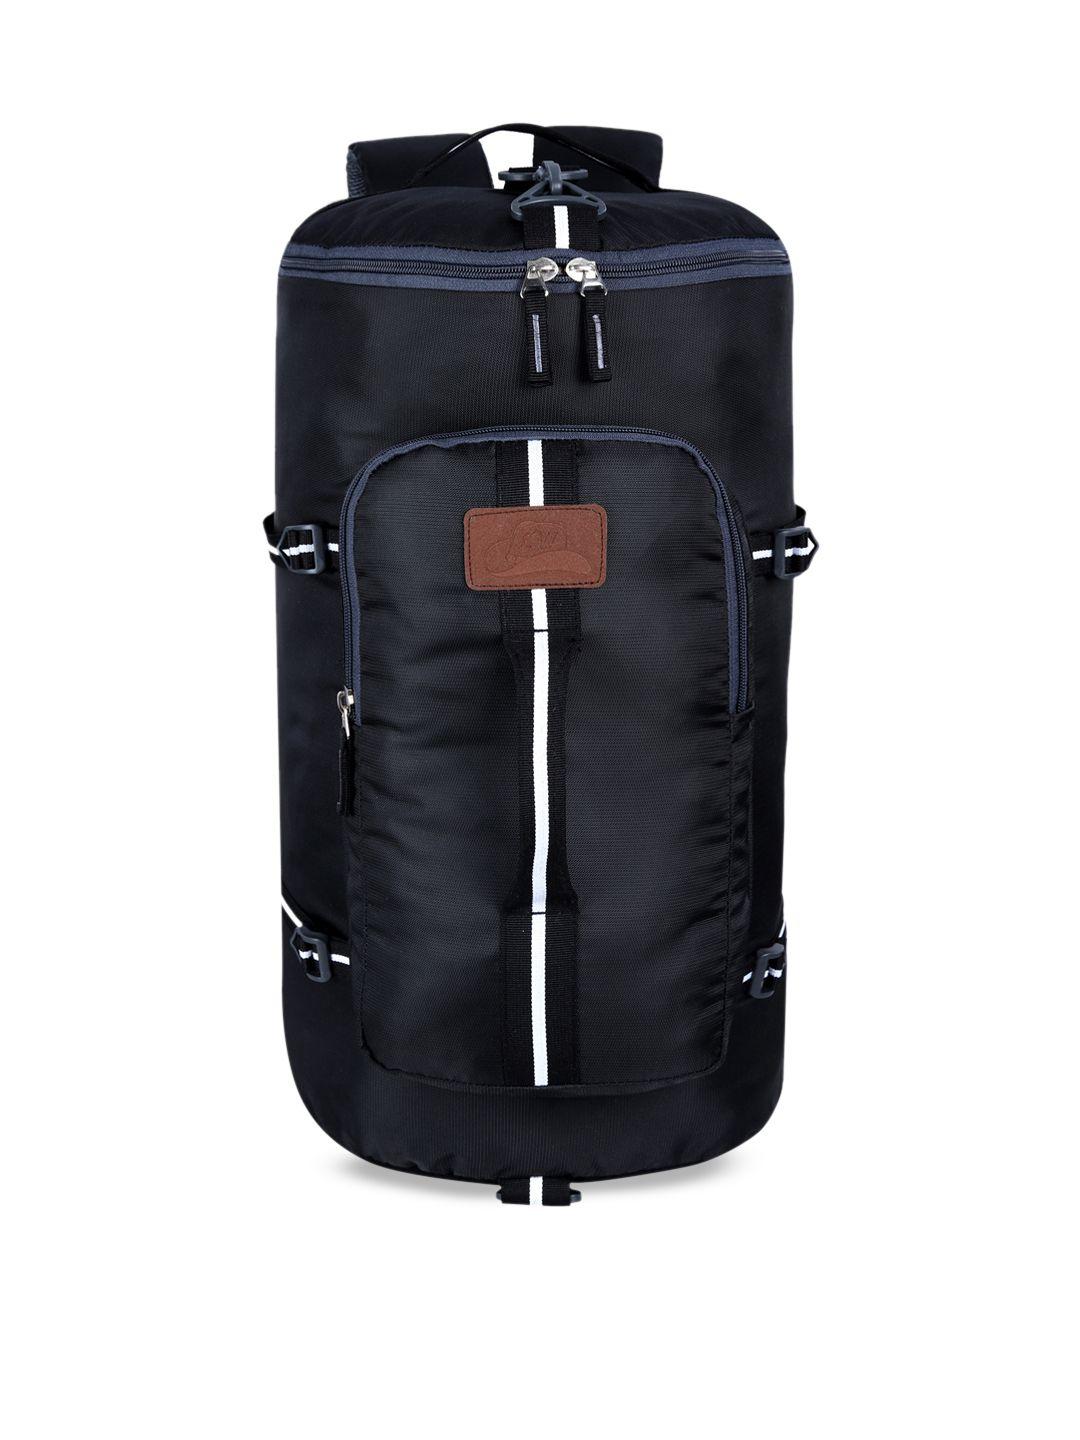 leather world unisex black 25 litre rucksacks duffel bag